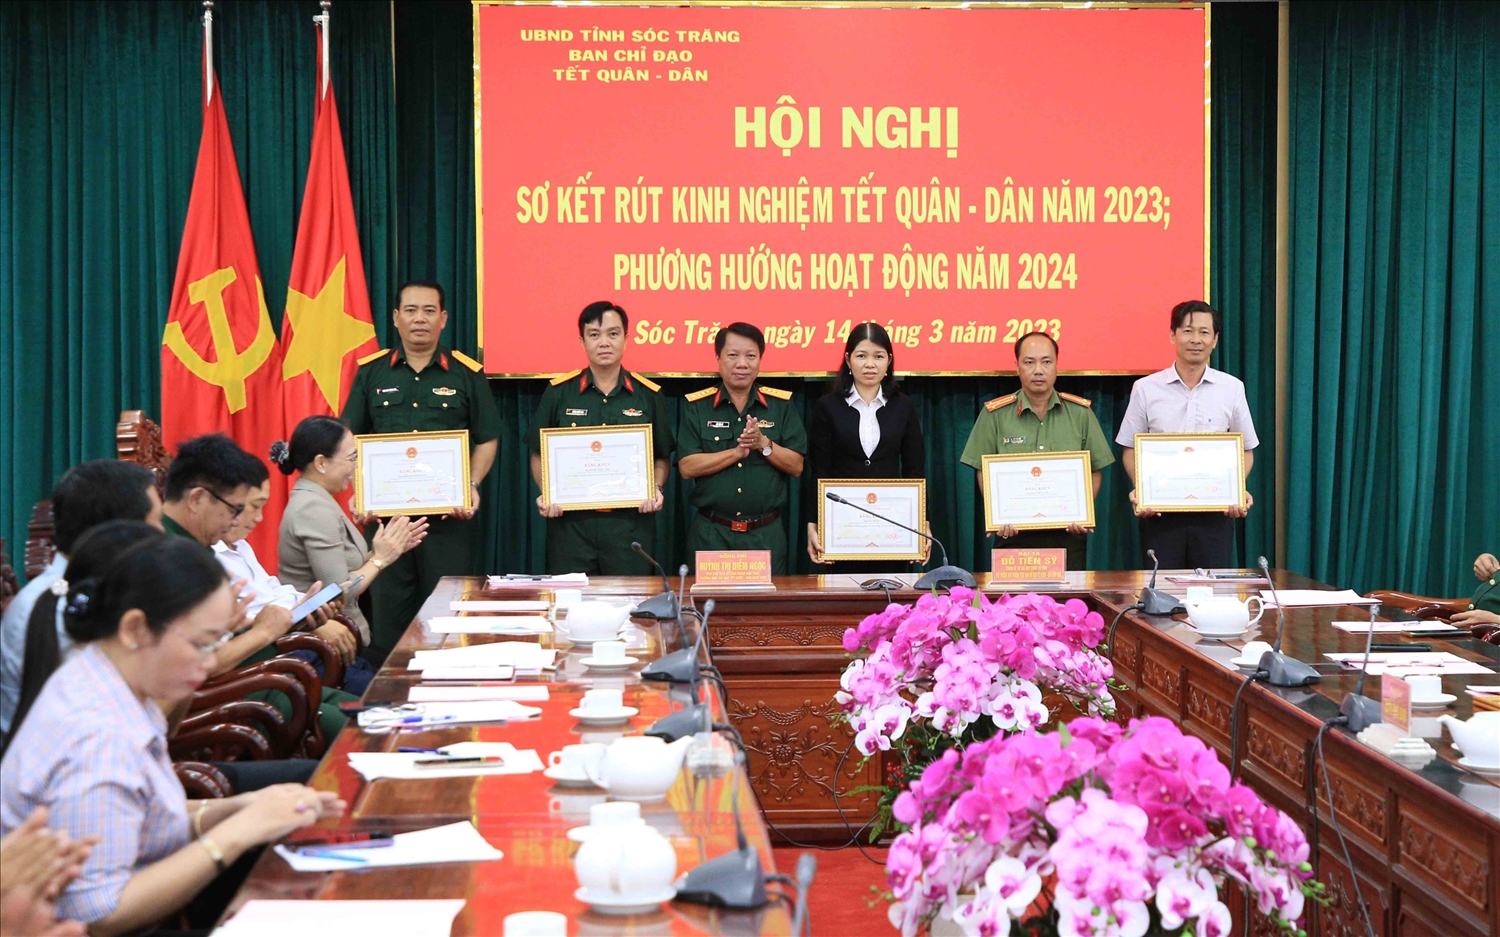 Đại tá Đỗ Tiến Sỹ - Chính ủy Bộ Chỉ huy Quân sự tỉnh trao bằng khen của UBND tỉnh tặng các cá nhân có thành tích tiểu biểu trong tham gia hoạt động Tết quân – dân năm 2023.